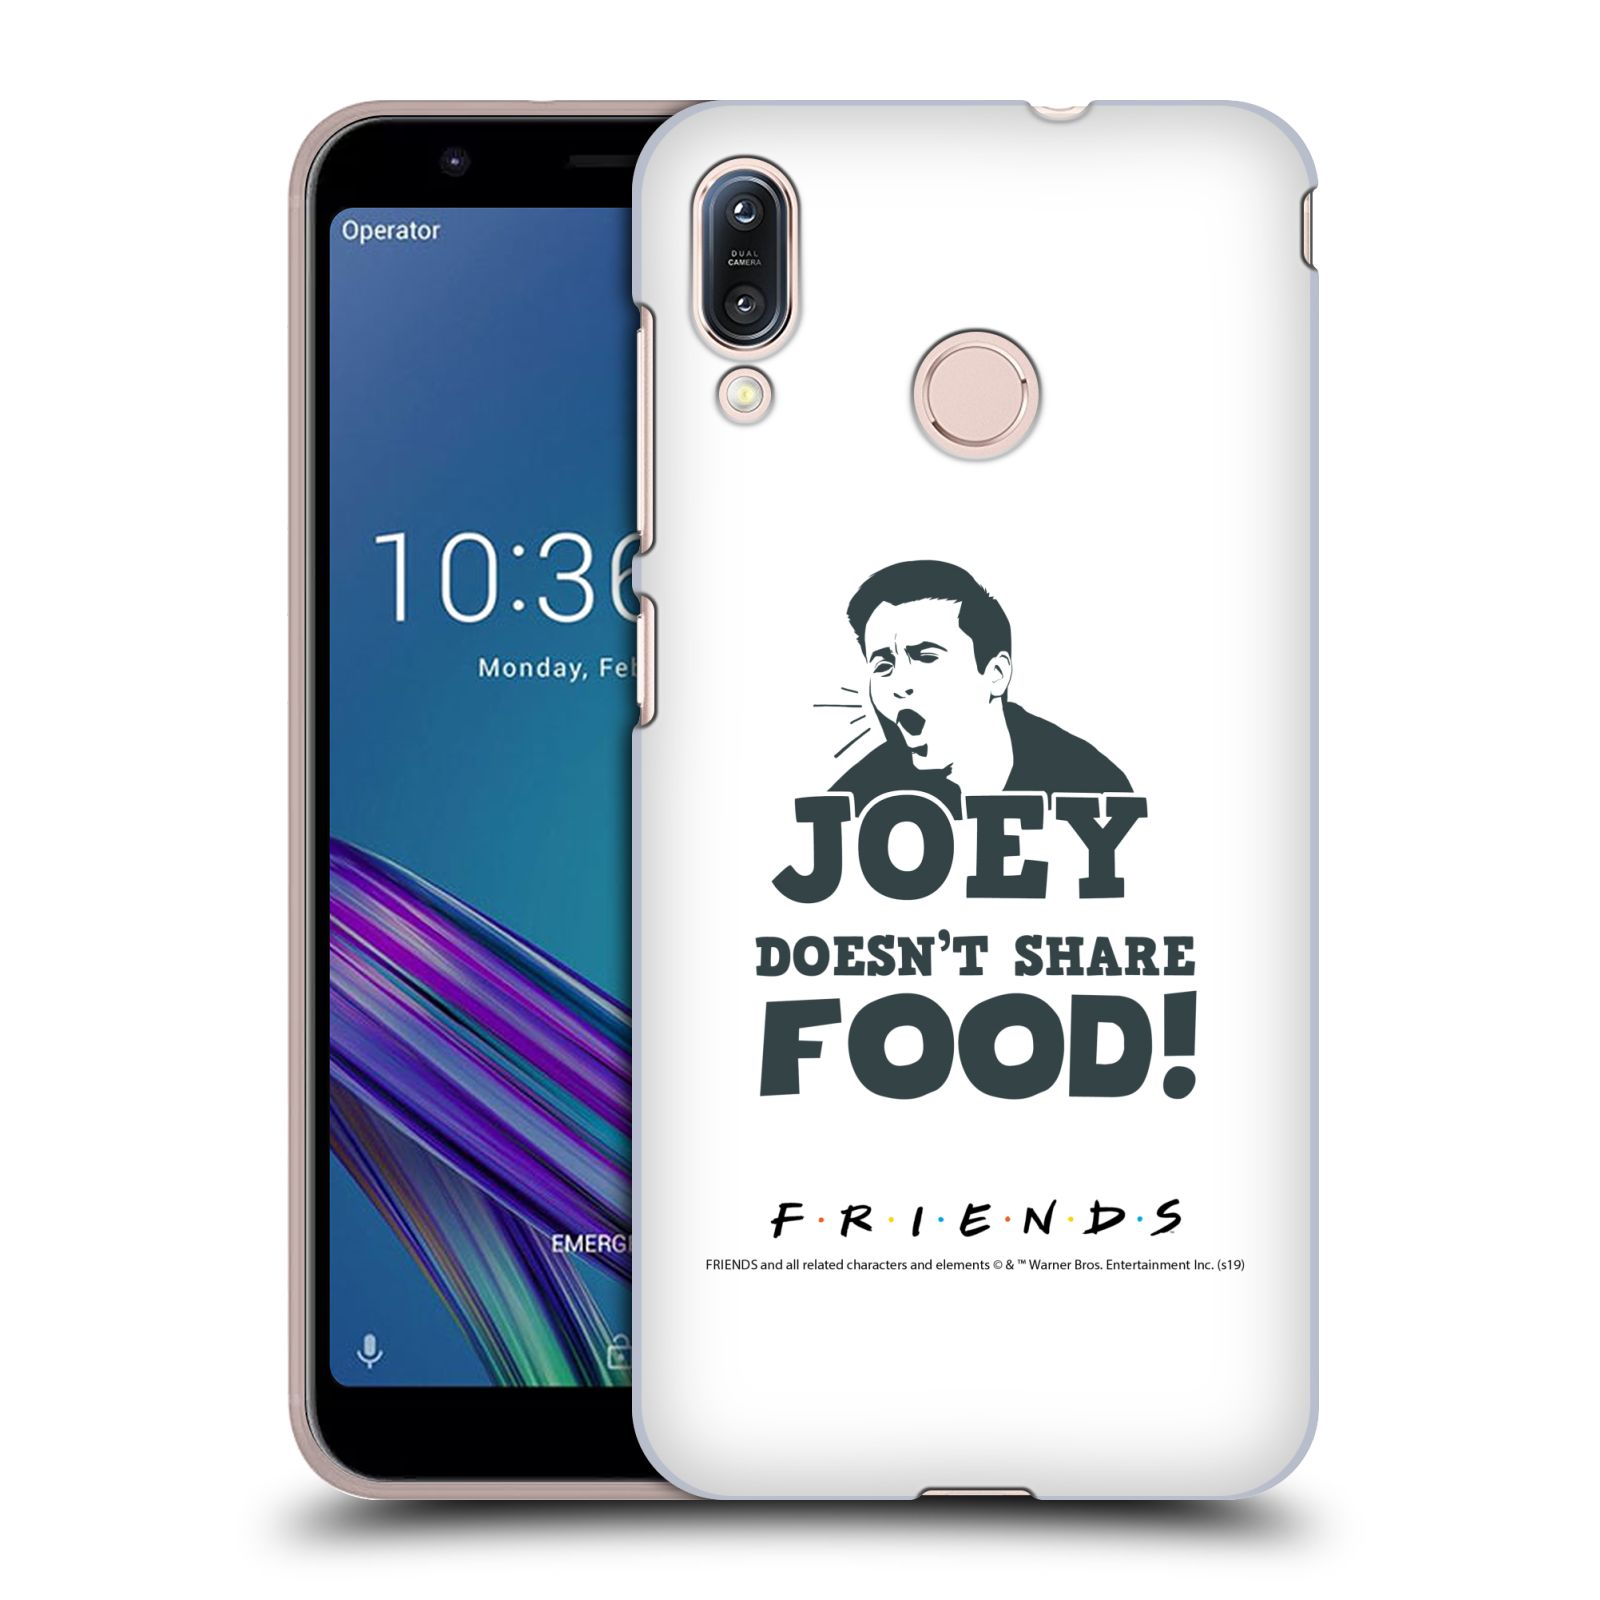 Pouzdro na mobil ASUS ZENFONE MAX M1 (ZB555KL) - HEAD CASE - Seriál Přátelé - Joey se o jídlo nedělí